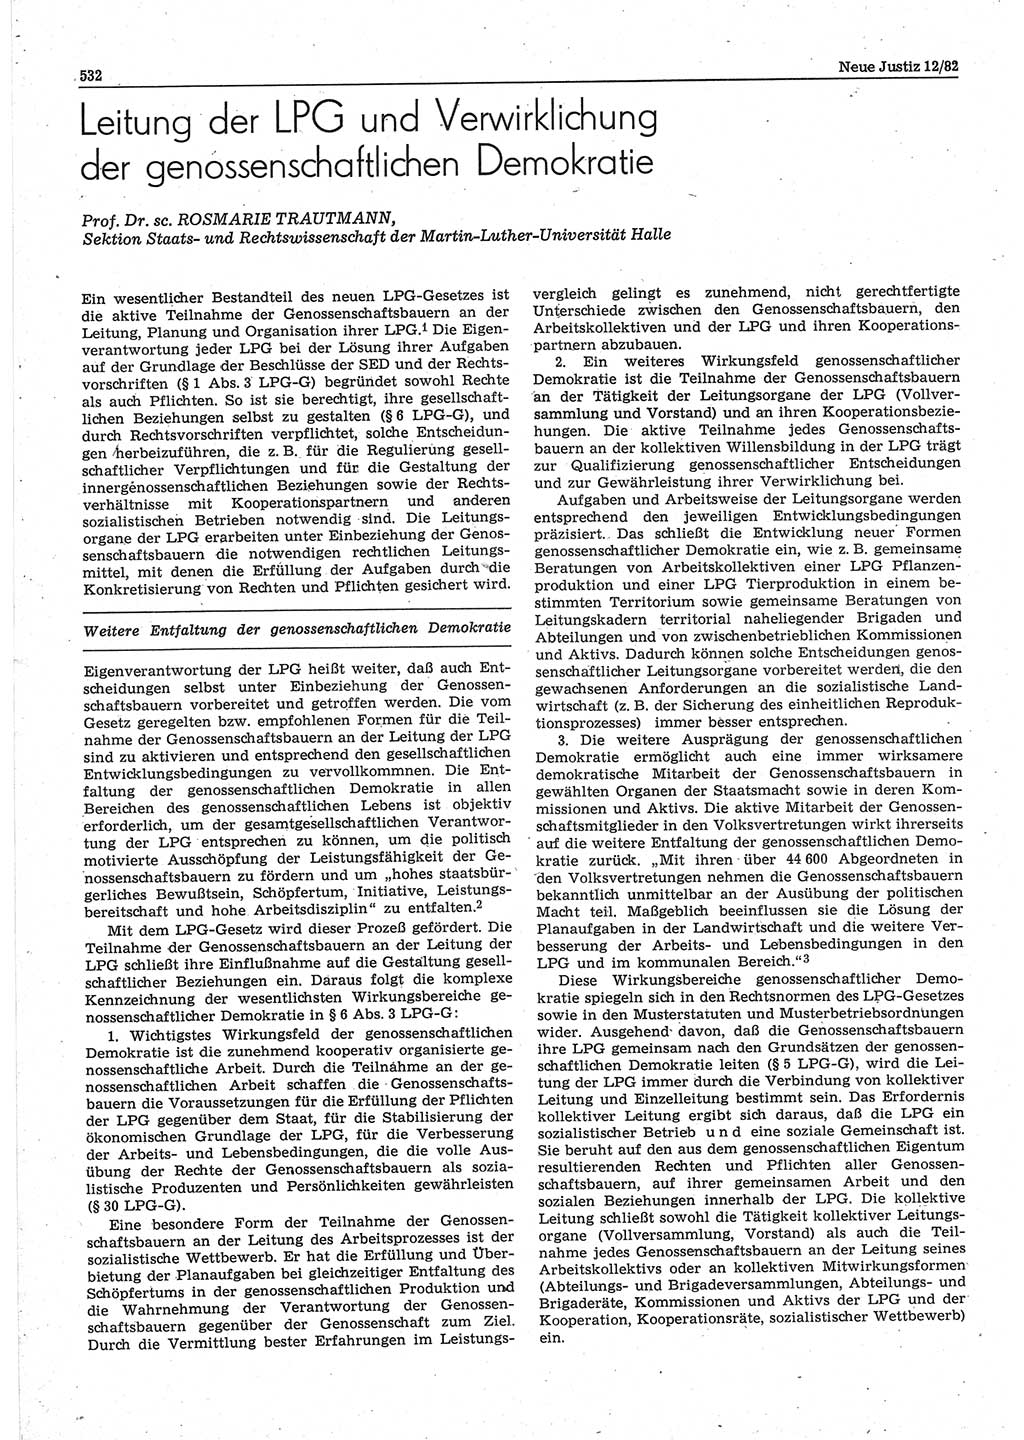 Neue Justiz (NJ), Zeitschrift für sozialistisches Recht und Gesetzlichkeit [Deutsche Demokratische Republik (DDR)], 36. Jahrgang 1982, Seite 532 (NJ DDR 1982, S. 532)